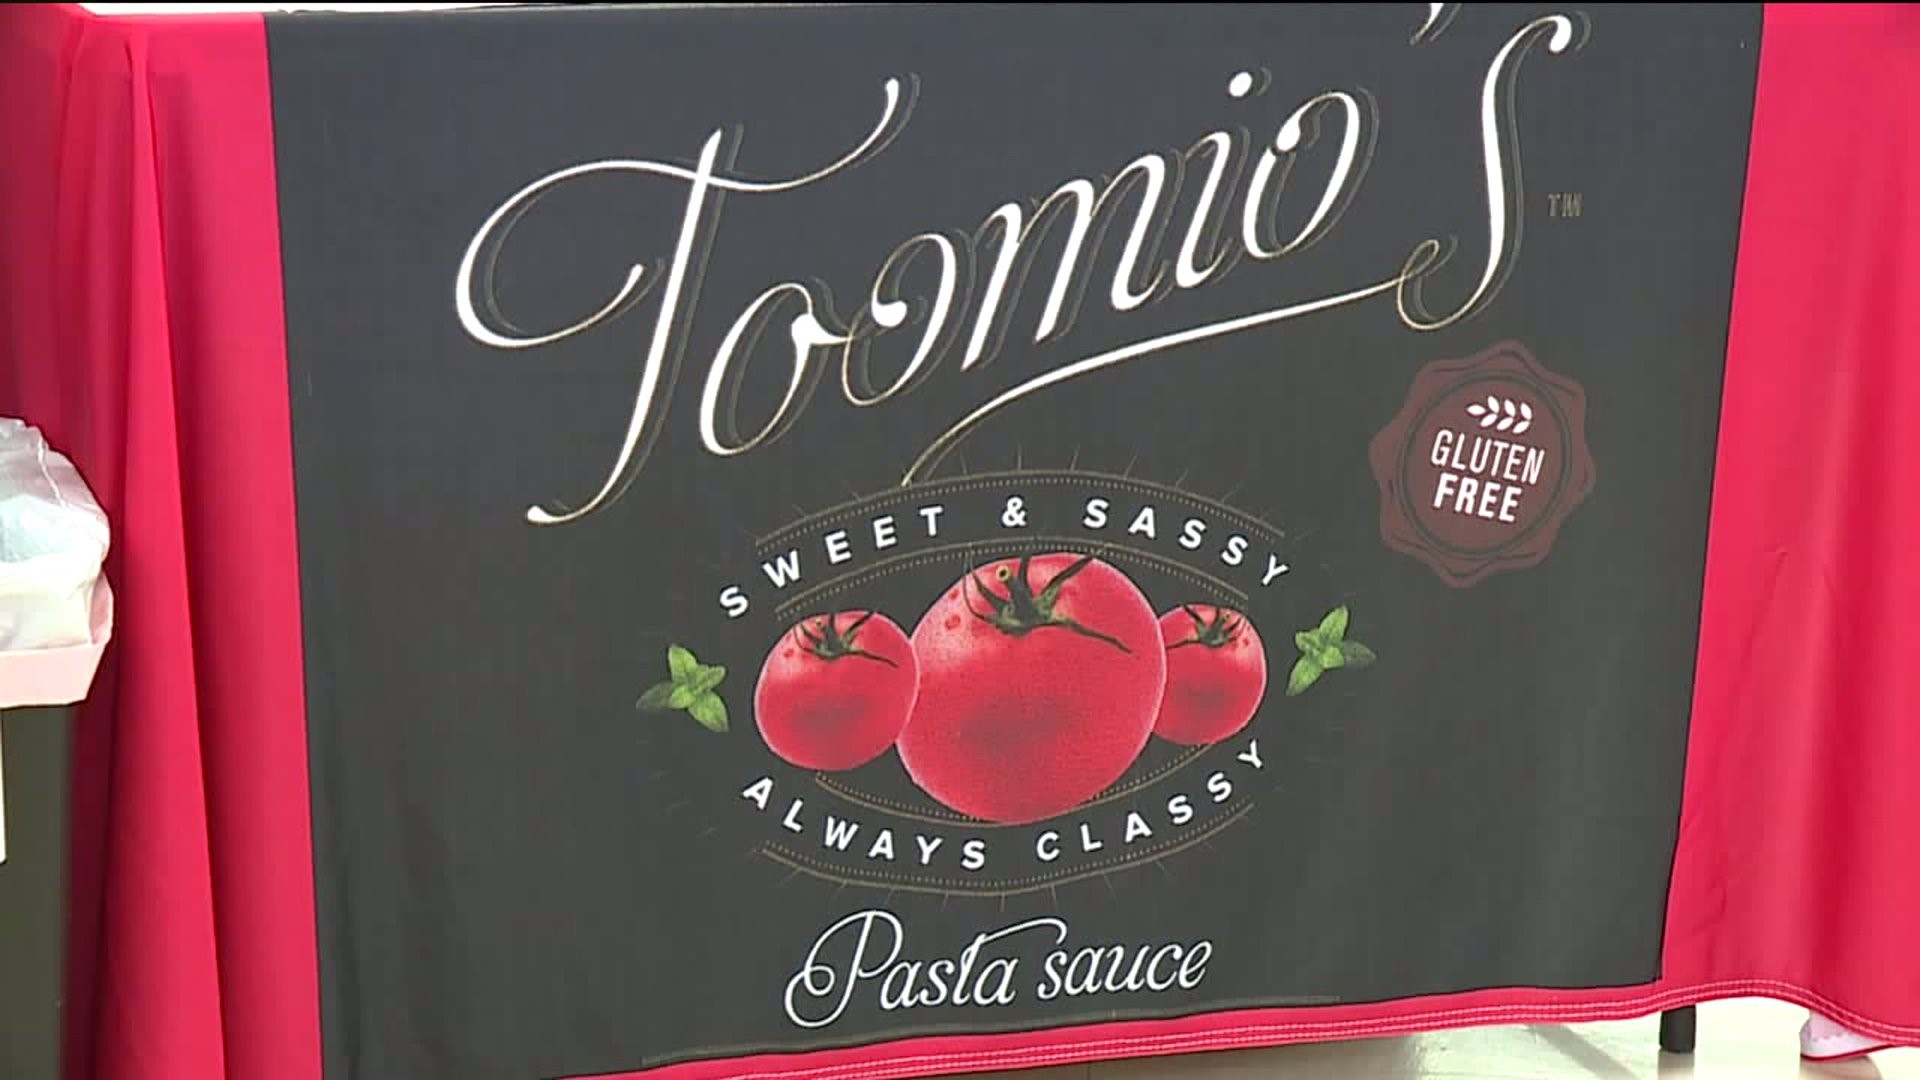 Taste Test: Toomio's Pasta Sauce